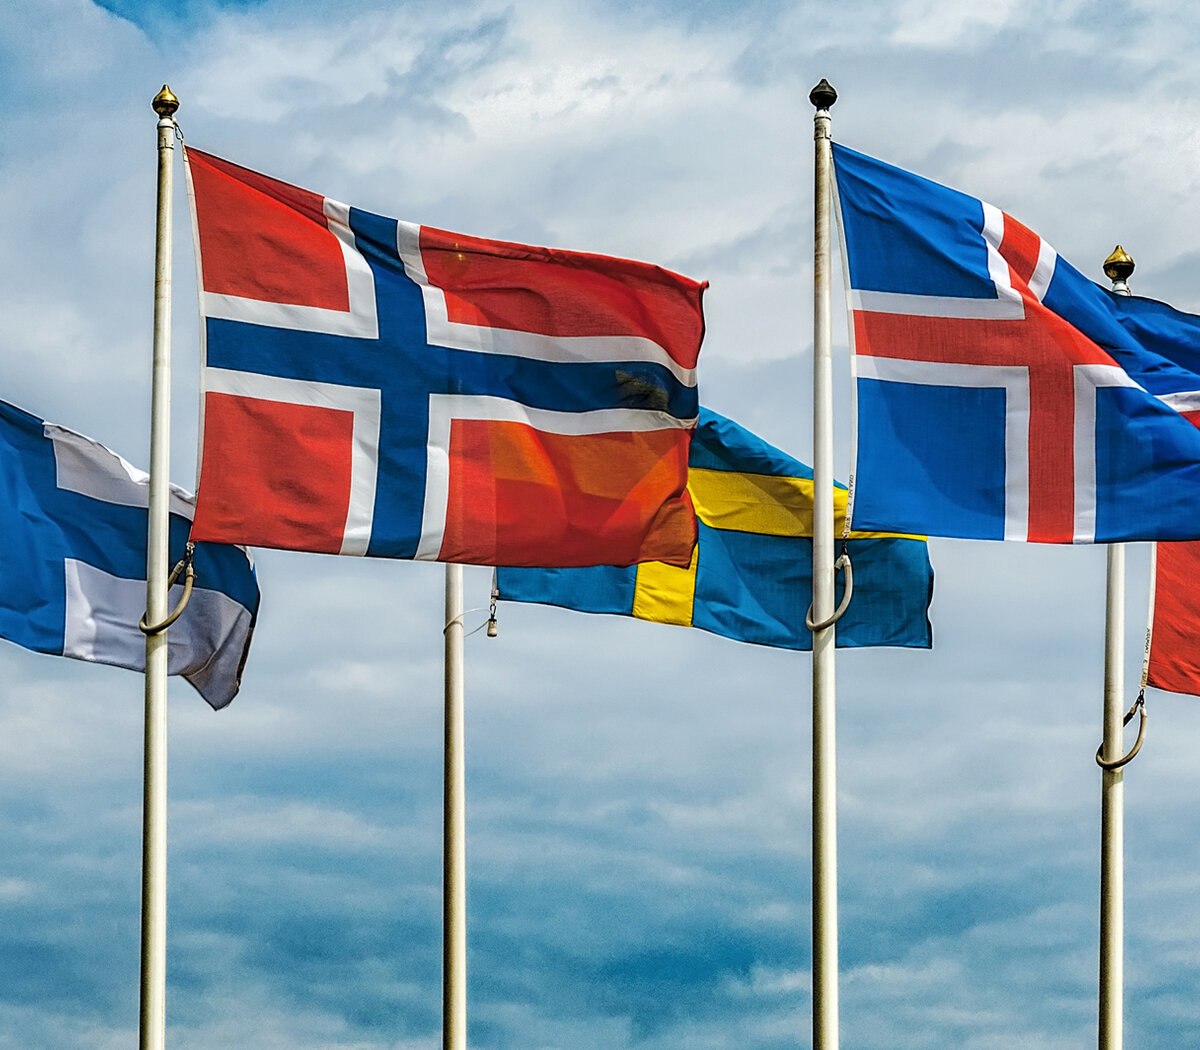 Cuál es el secreto de los países nórdicos? | Desarrollo igualitario,  paridad de género, excelencia educativa, amplia cobertura de salud, sin  pobreza y poca criminalidad y corrupción | Página12